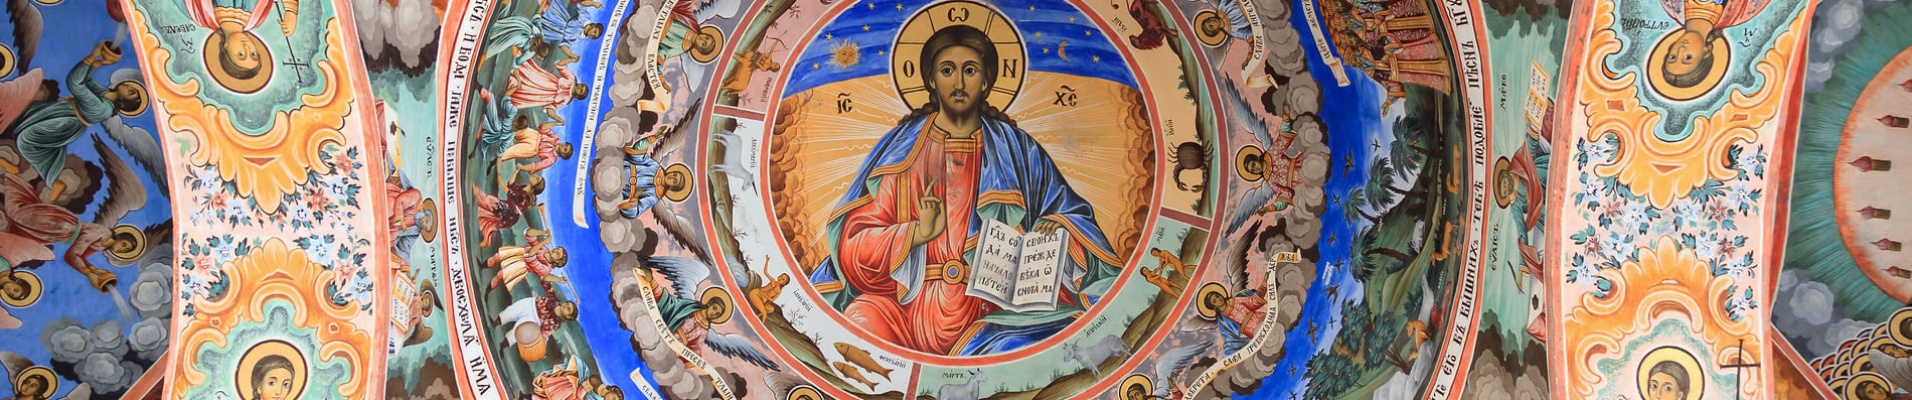 Fresques du Monastère de Rila en Bulgarie